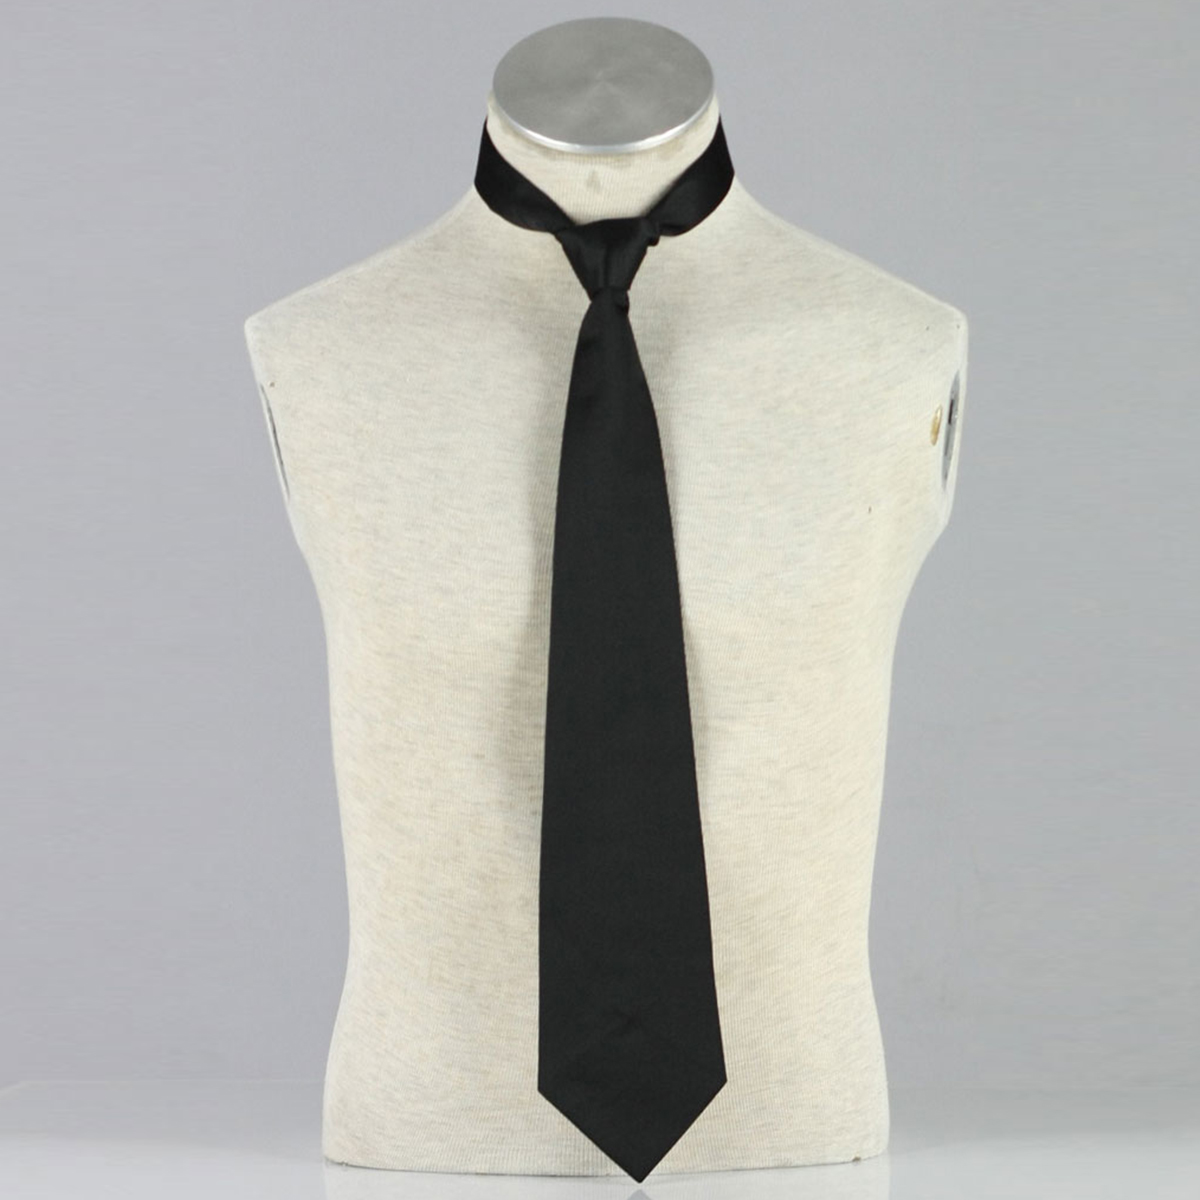 Axis Powers Hetalia Sommer Hunn Uniform 2 Cosplay Kostymer Online Butikken